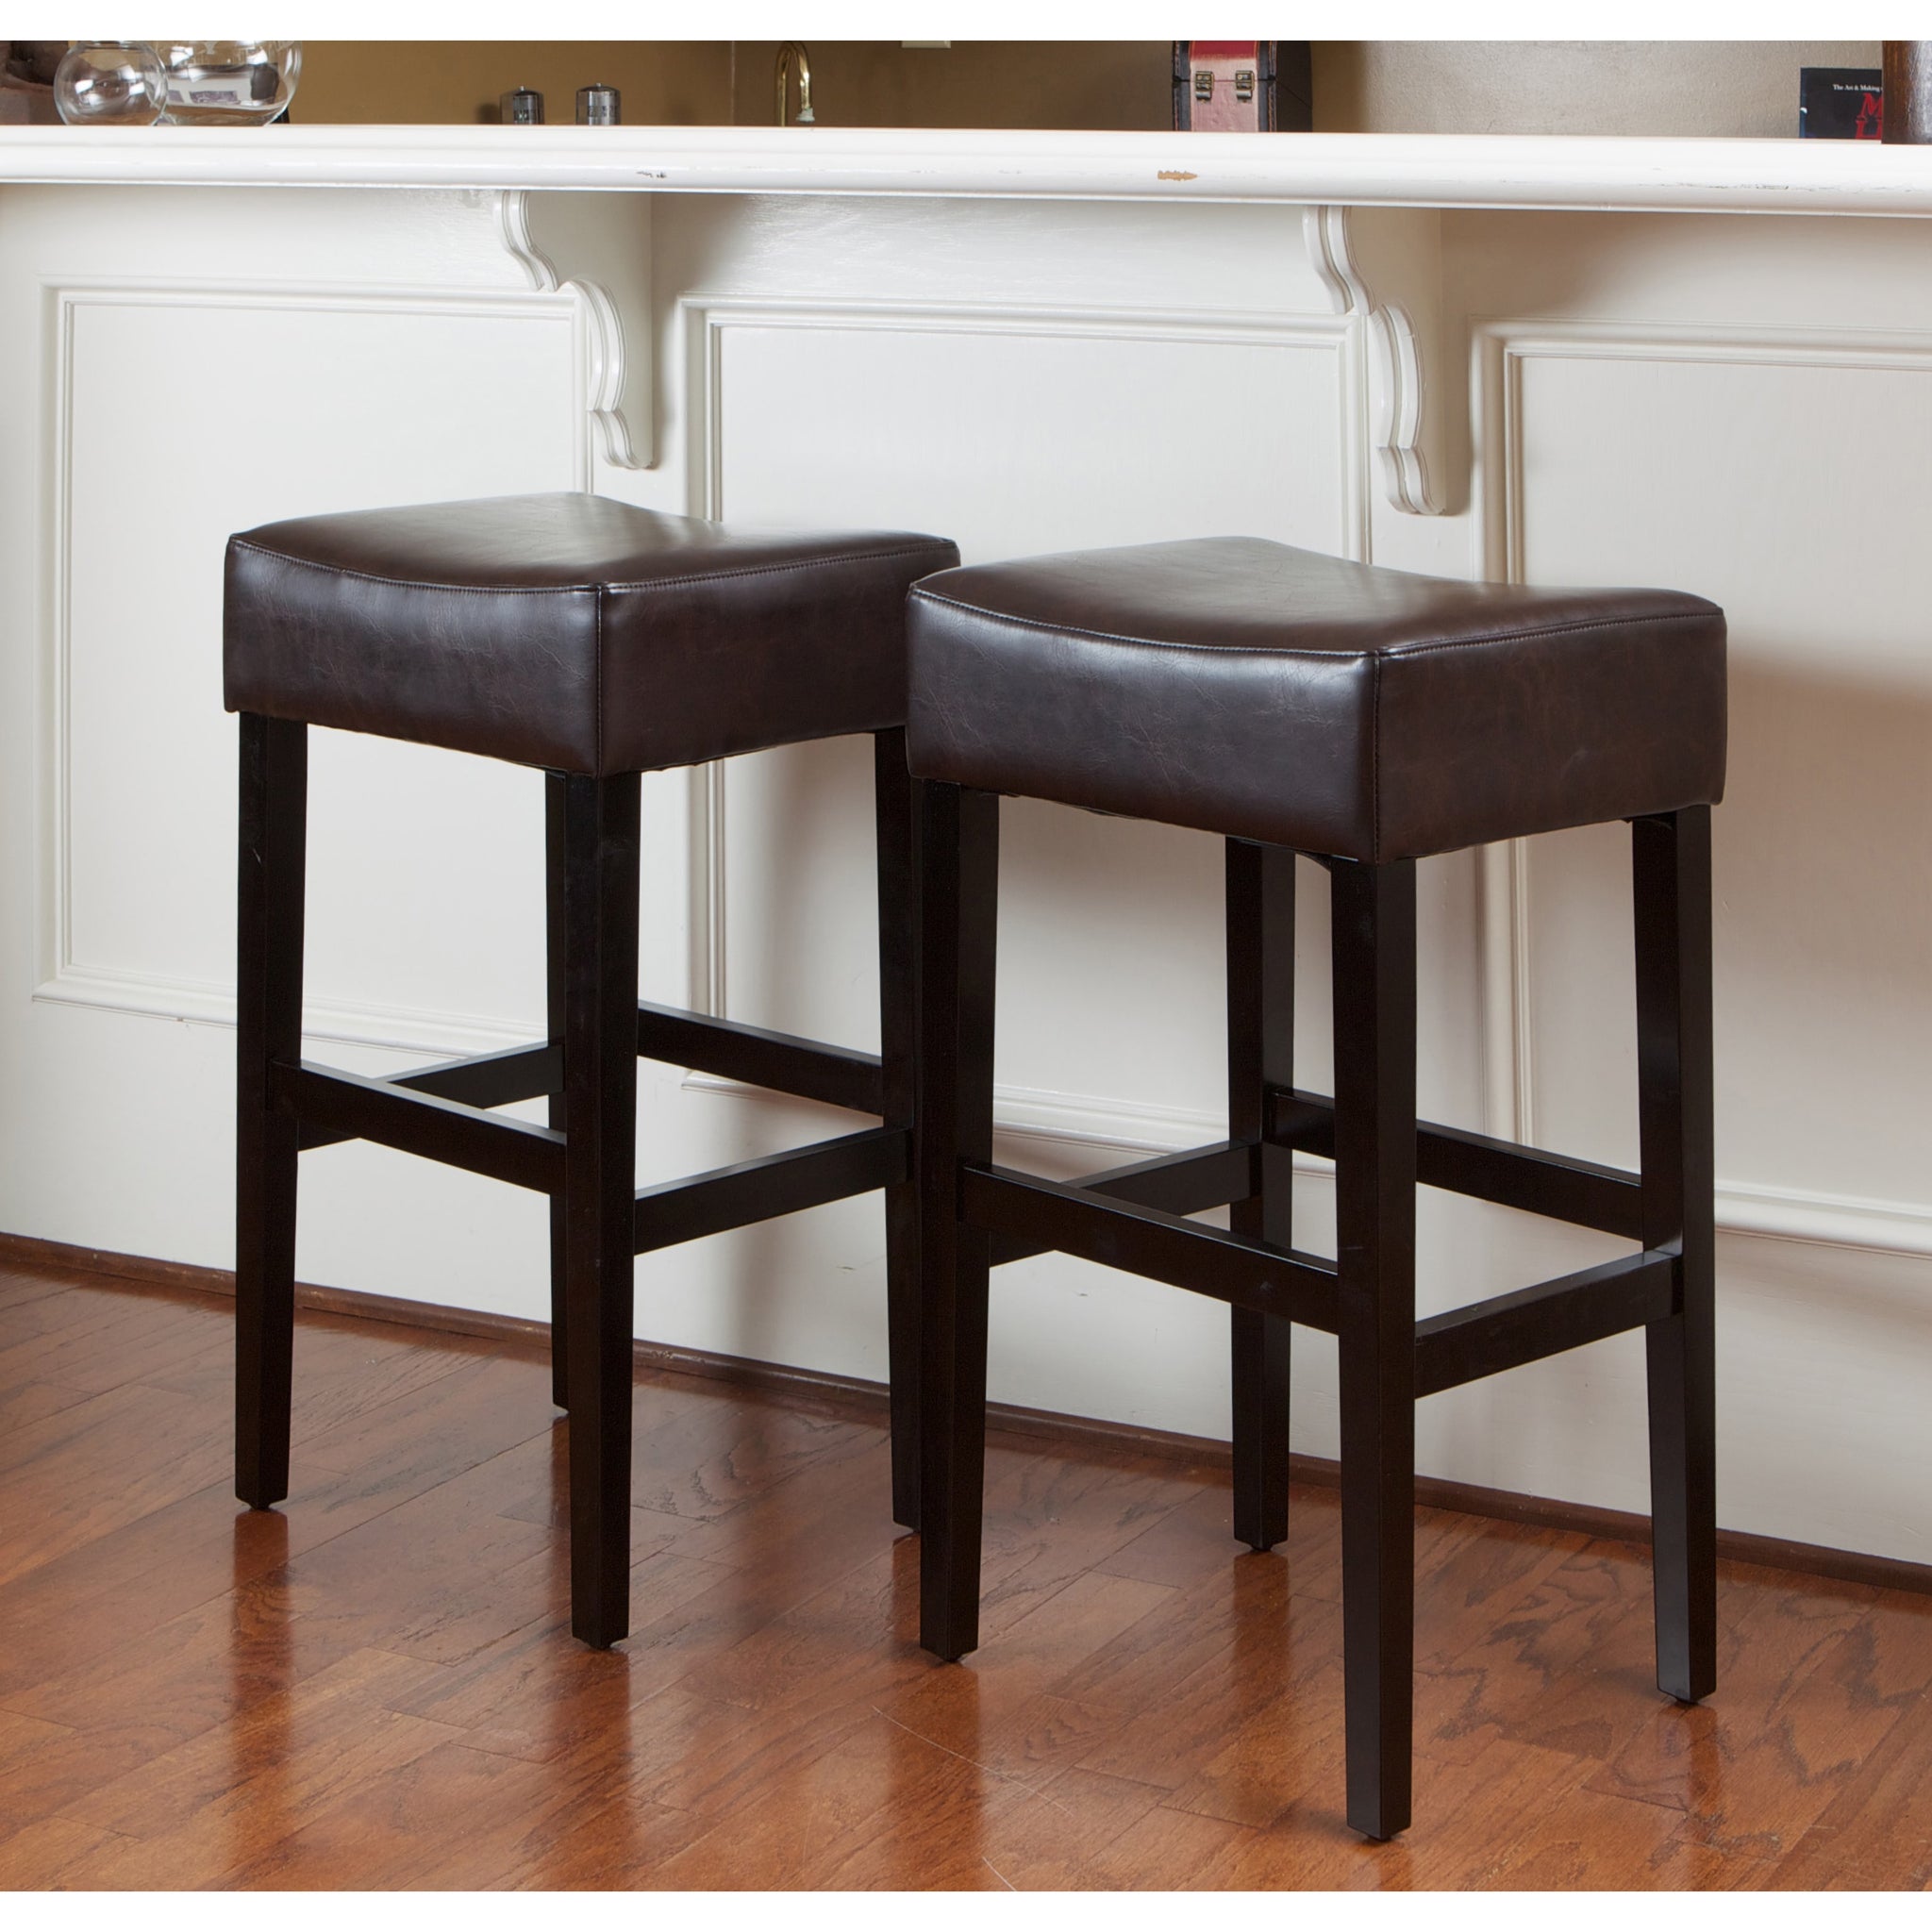 30 inch bar stools walmart